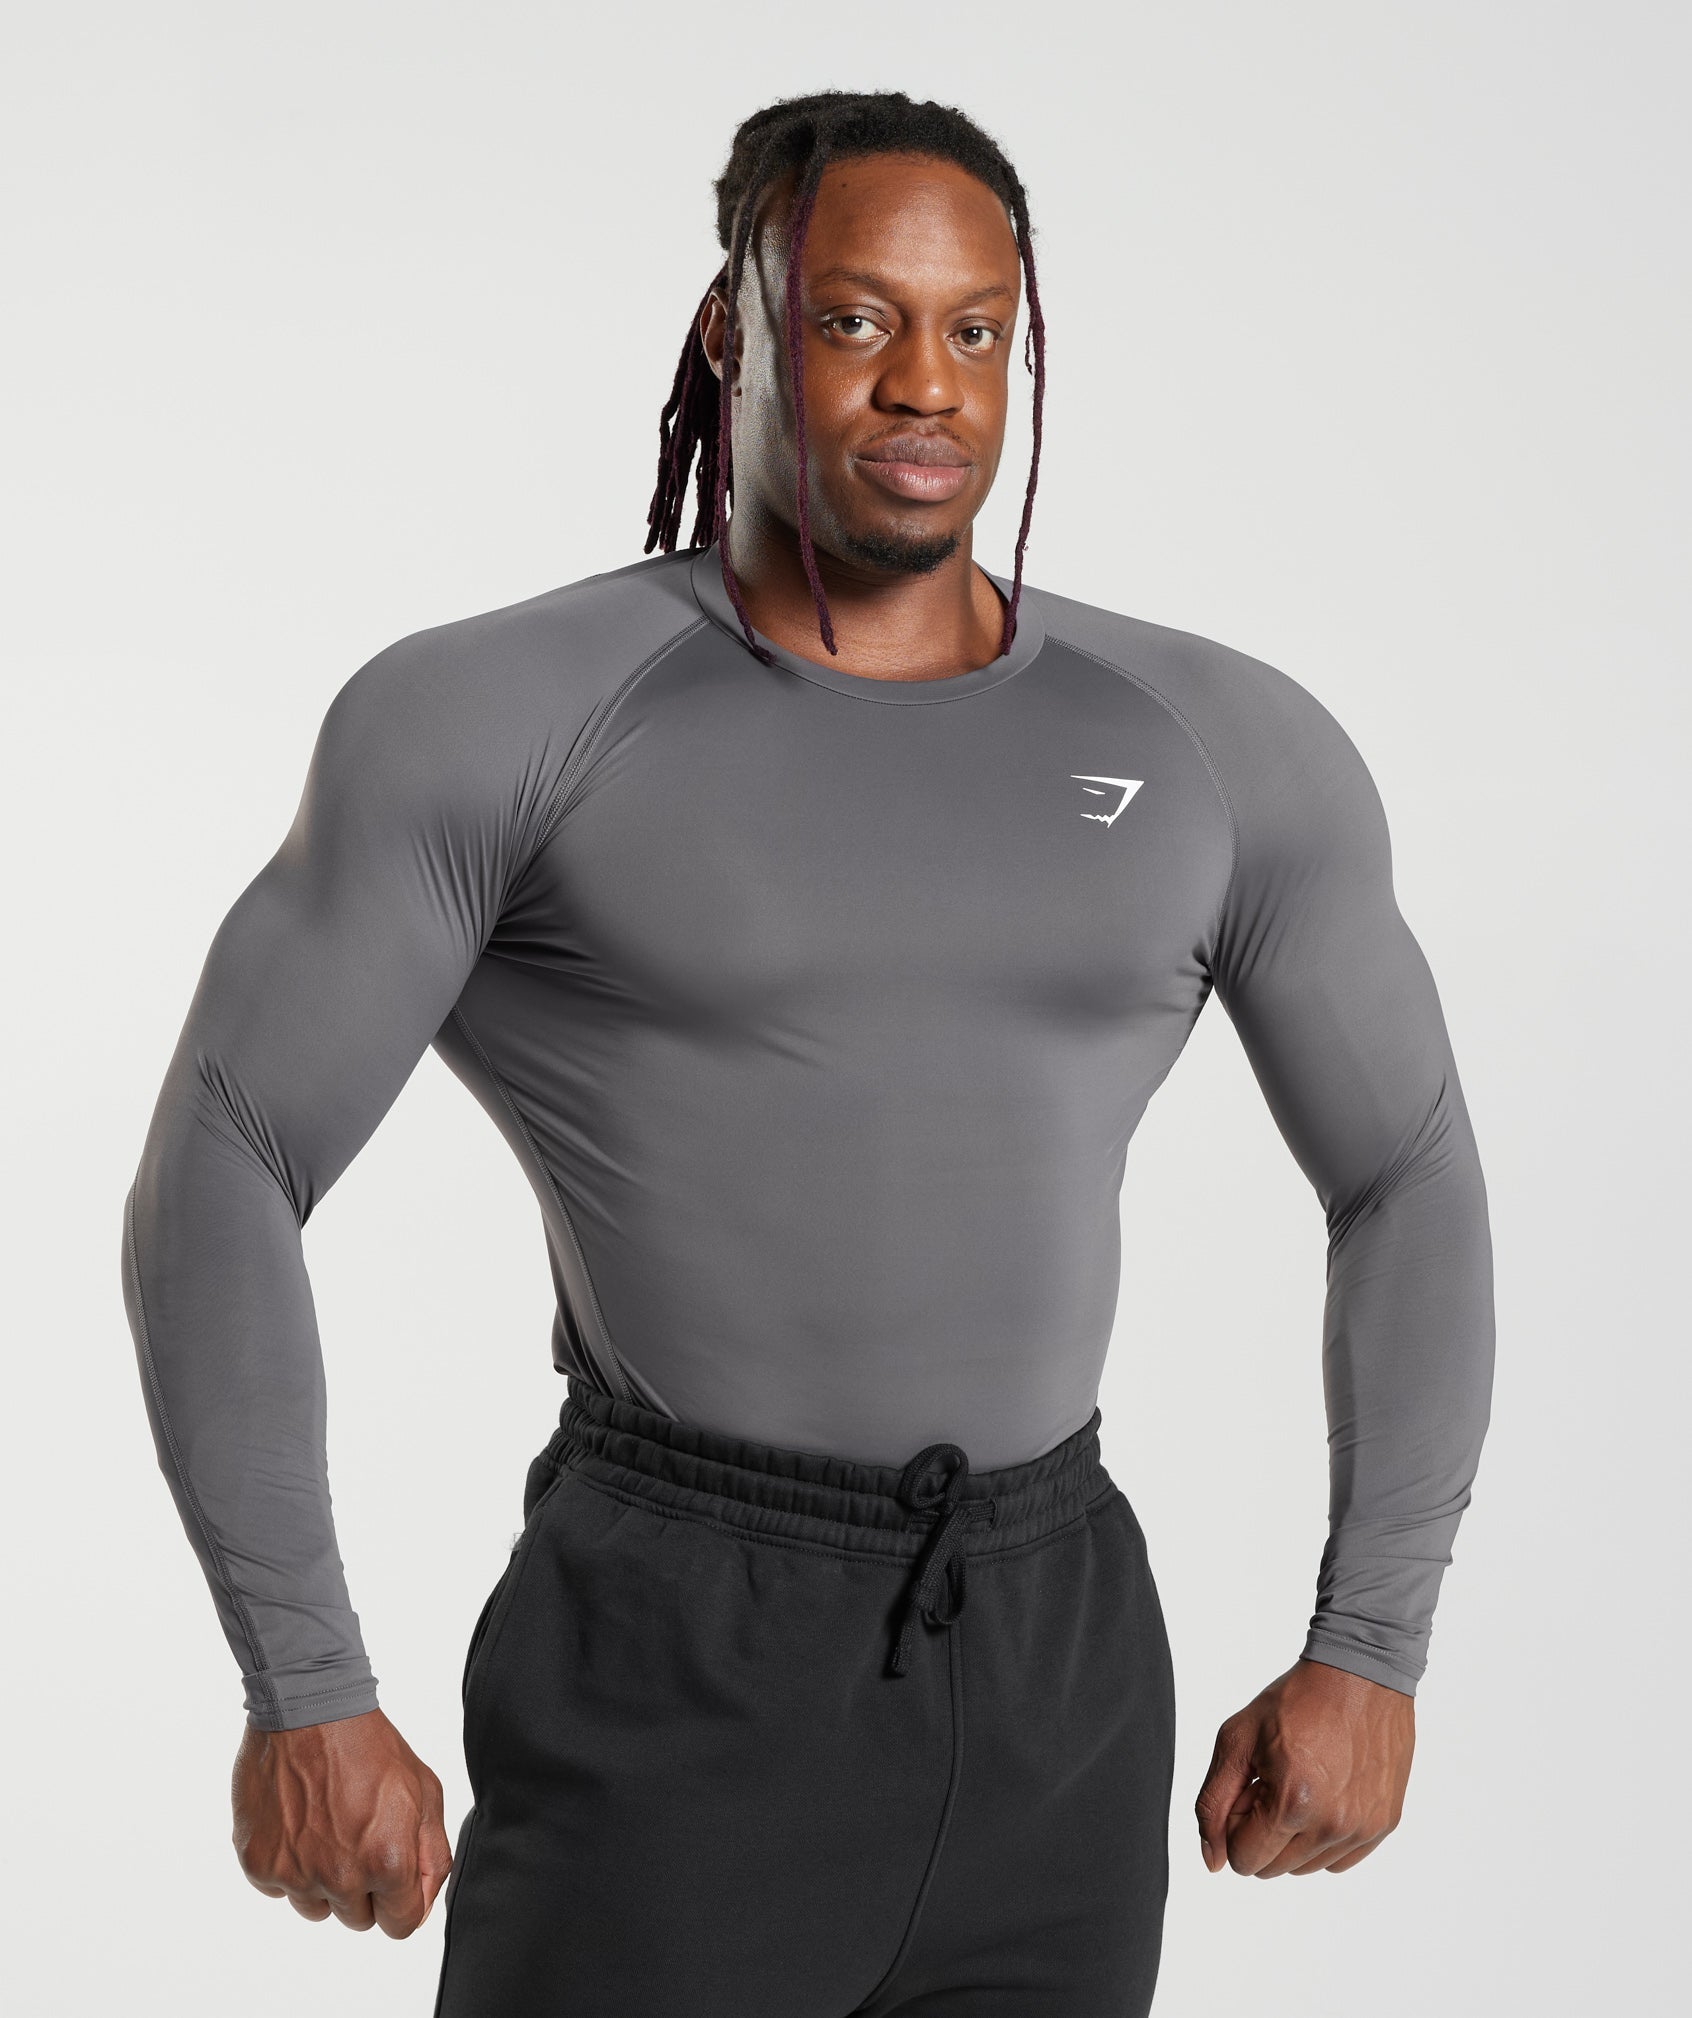 Gymshark compression shirts (unisex) • Tailles : S M L • Couleur